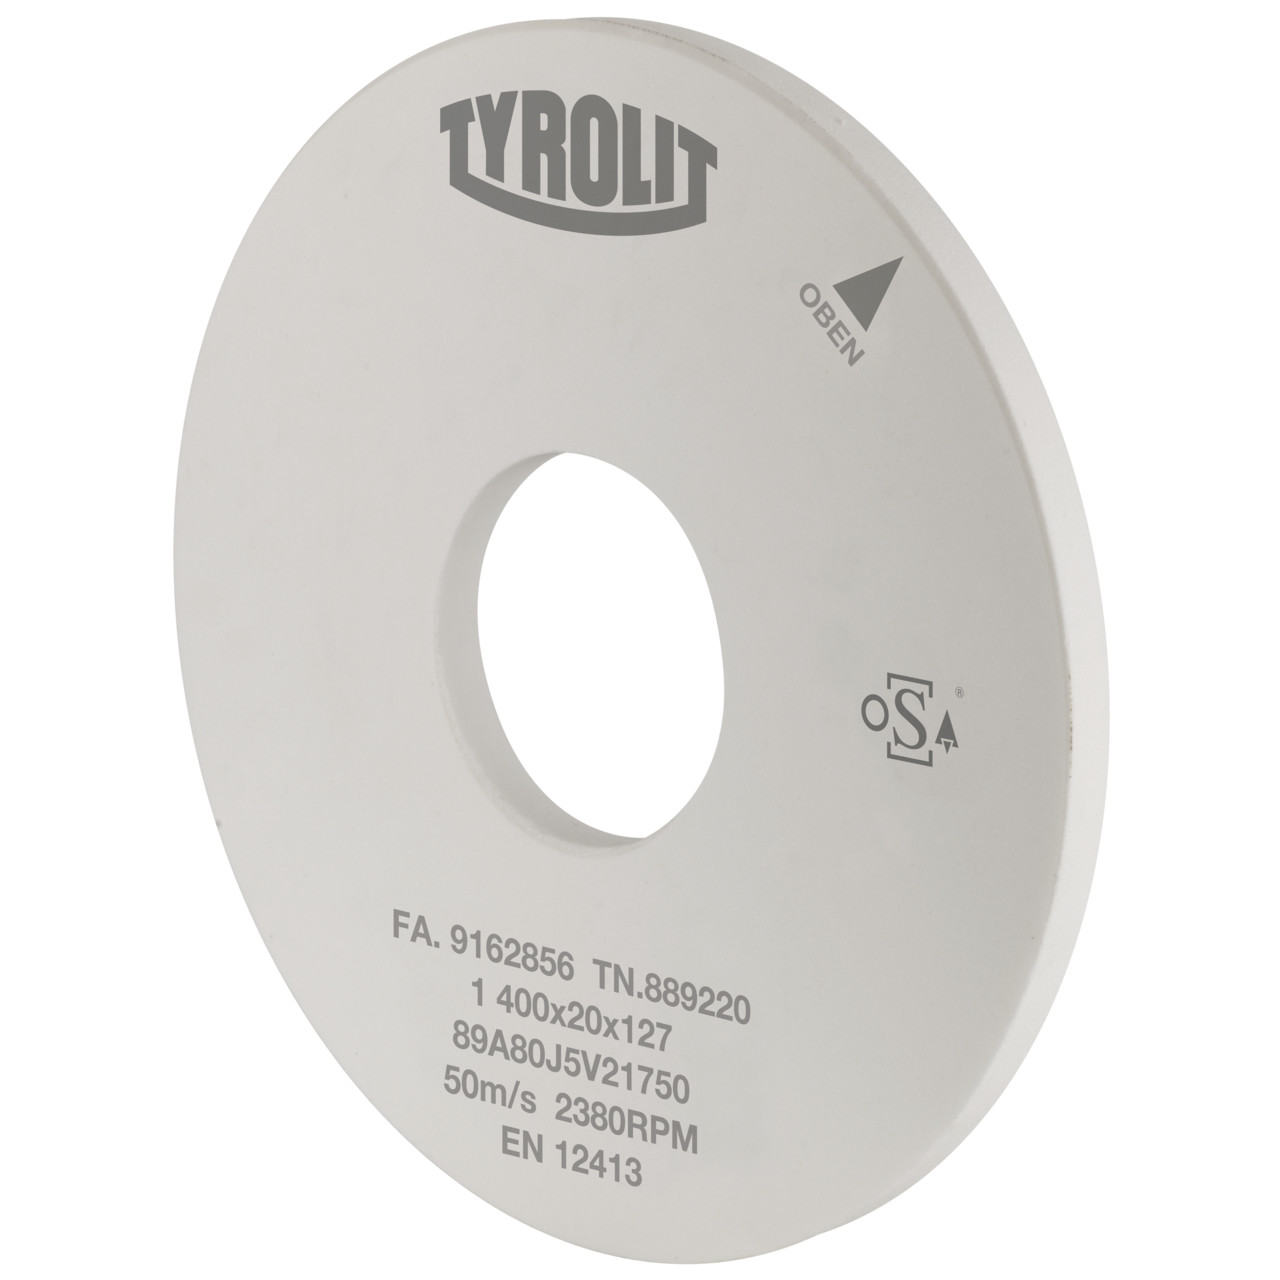 Tyrolit Rettifica cilindrica esterna Ceramica convenzionale DxDxH 500x60x203.2 Per acciai non legati e basso legati, forma: 1, Art. 39867